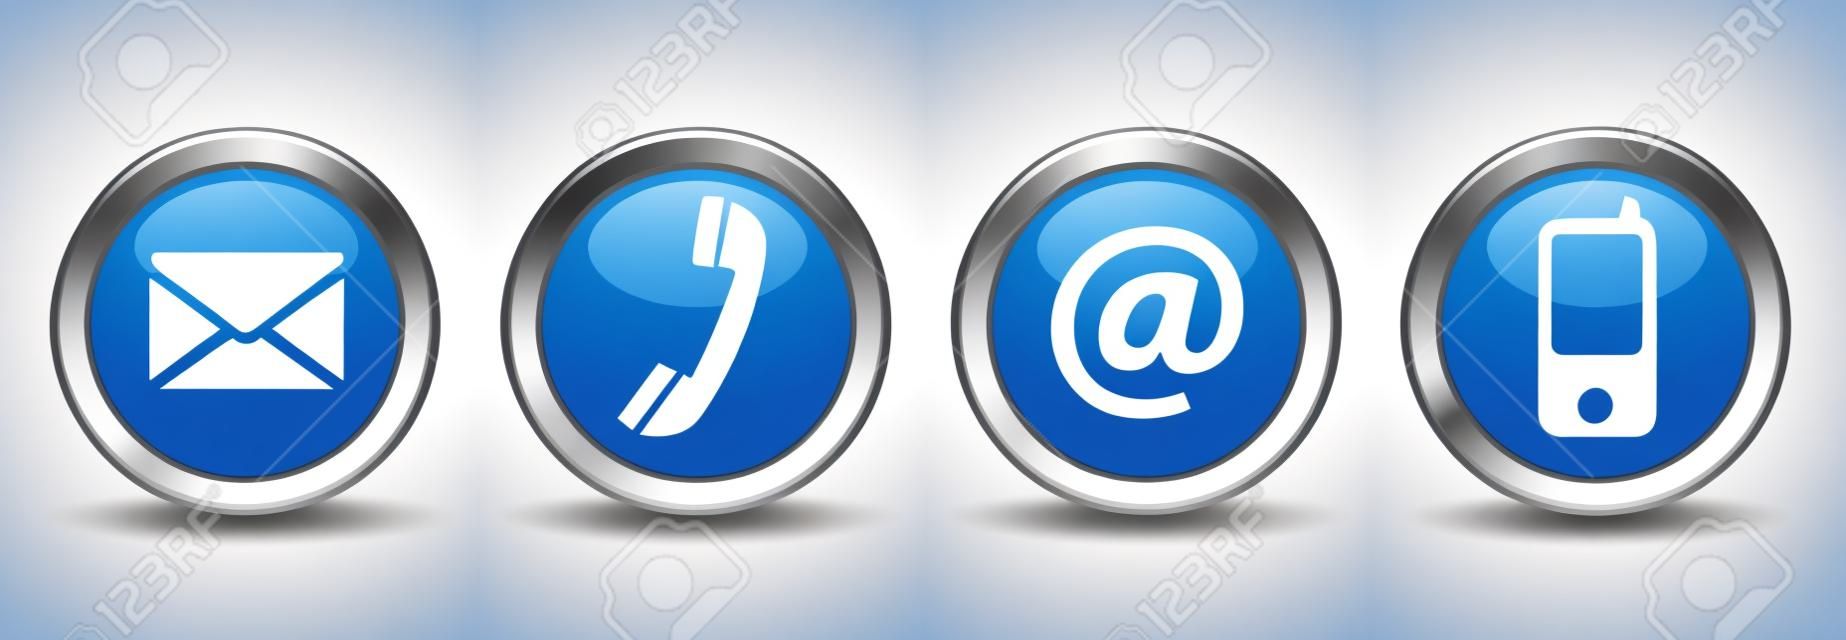 Связаться с нами веб-кнопок набор с электронной почтой, на, телефонной и мобильной иконы на синем вектора серебряный значок EPS 10 иллюстрации, изолированных на белом фоне.